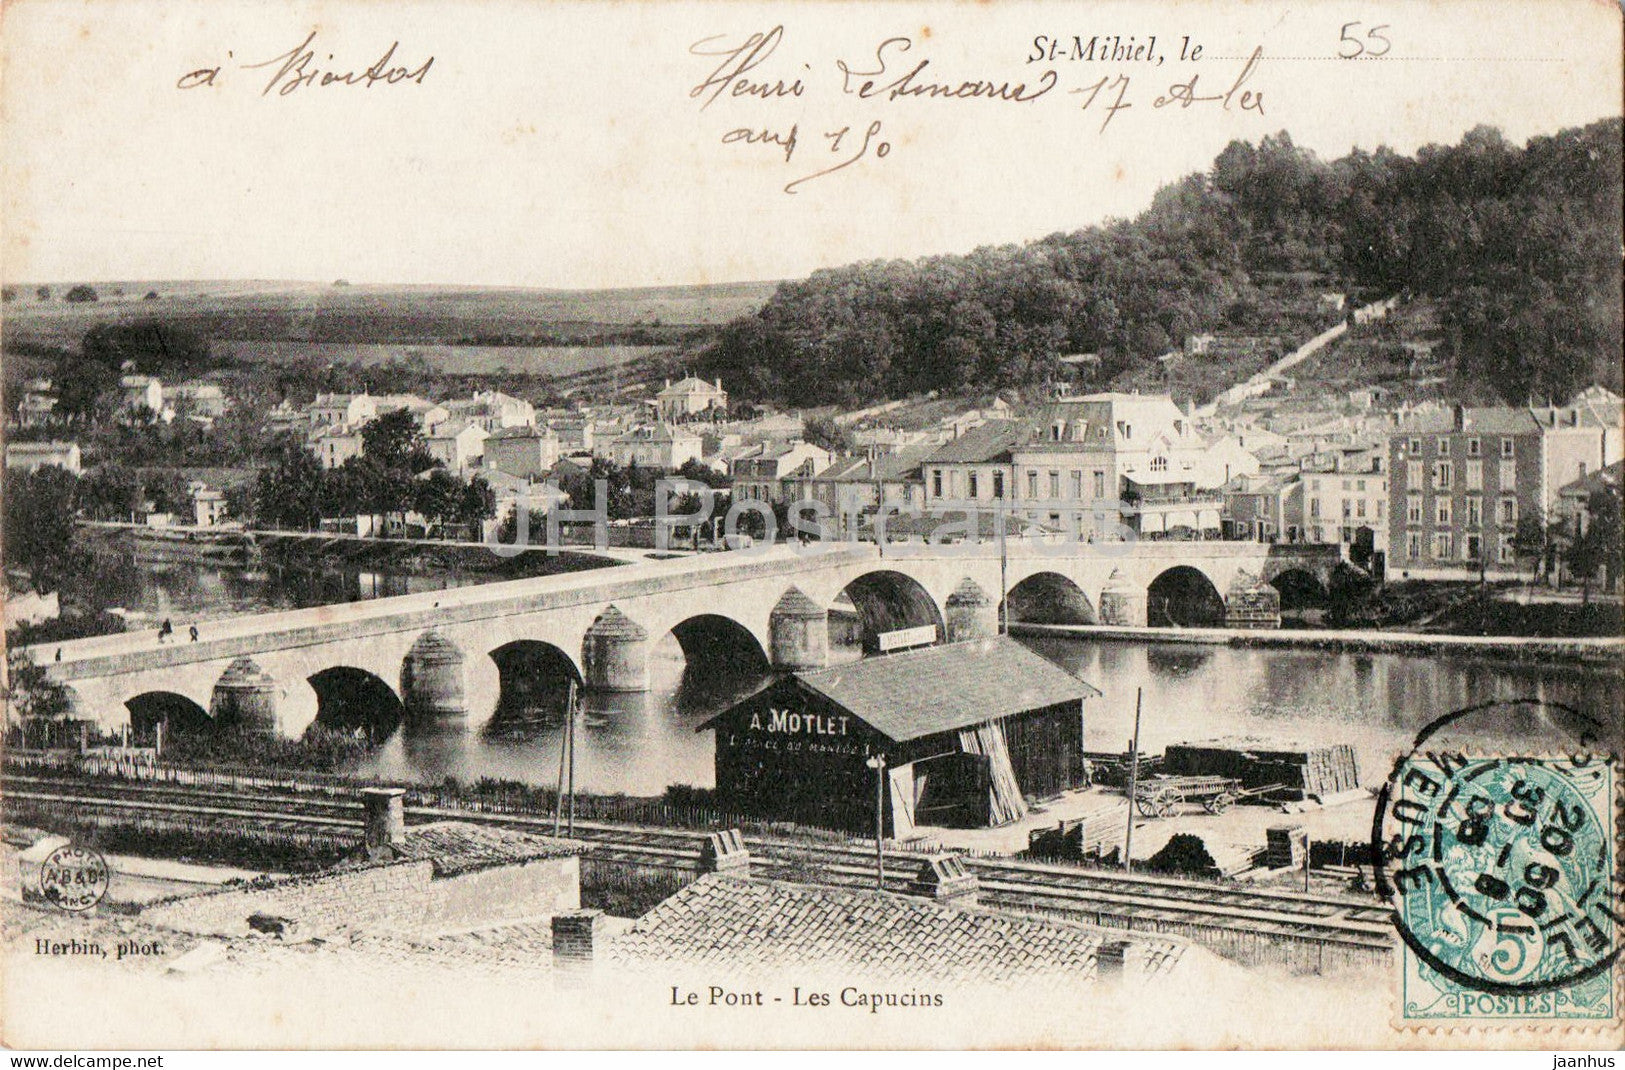 St Mihiel - Le Pont - Les Capucins - A Motlet - bridge - old postcard - 1905 - France - used - JH Postcards